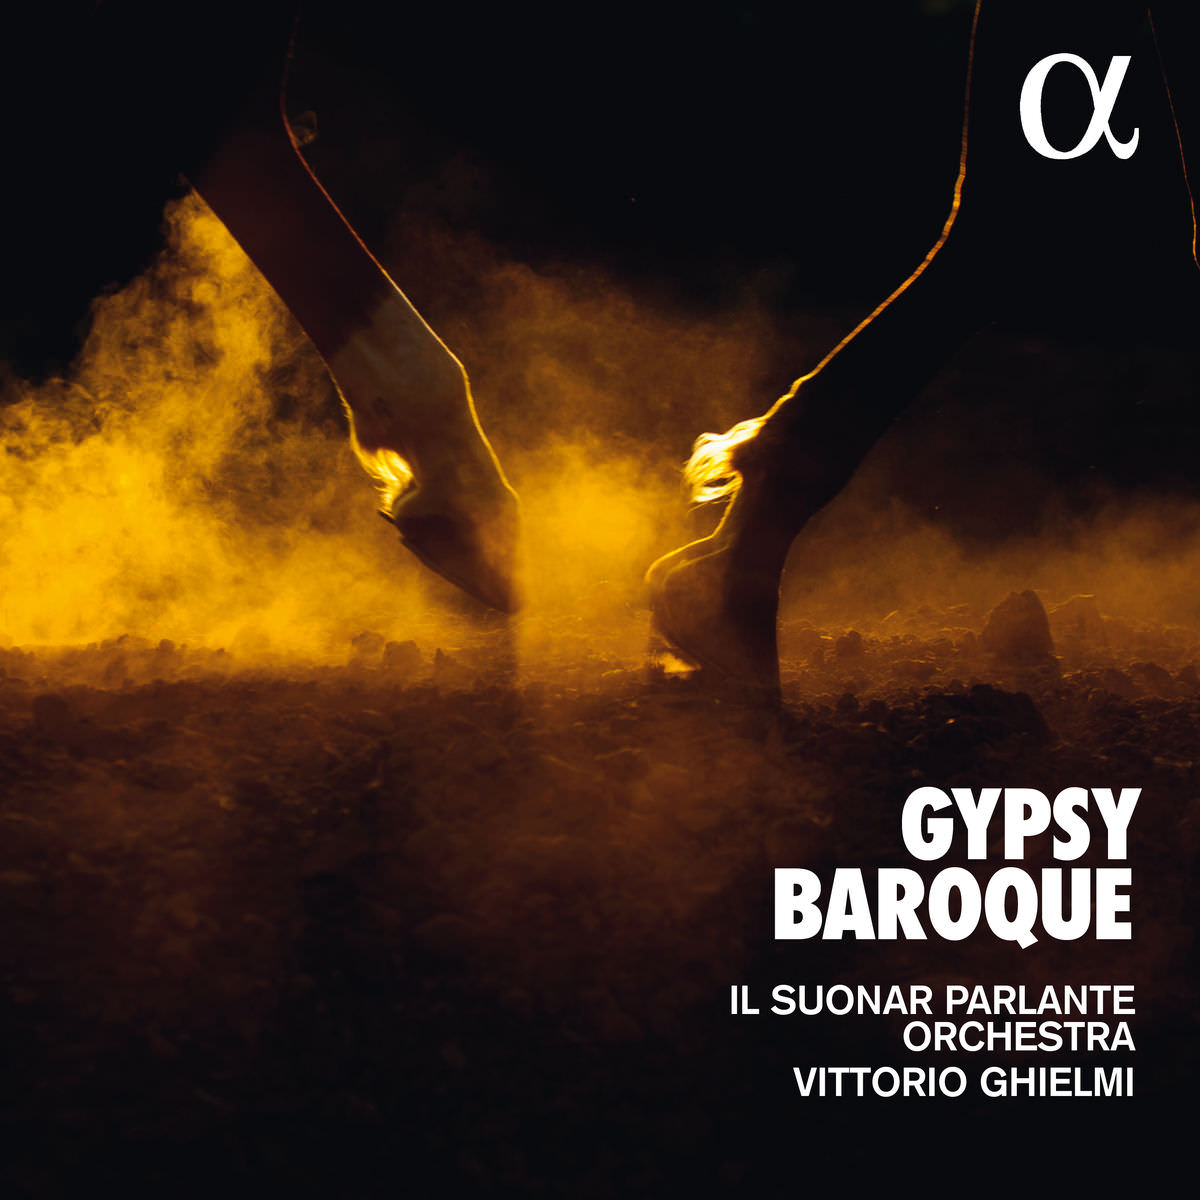 Il Suonar Parlante Orchestra & Vittorio Ghielmi - Gypsy Baroque (2018) [FLAC 24bit/44,1kHz]